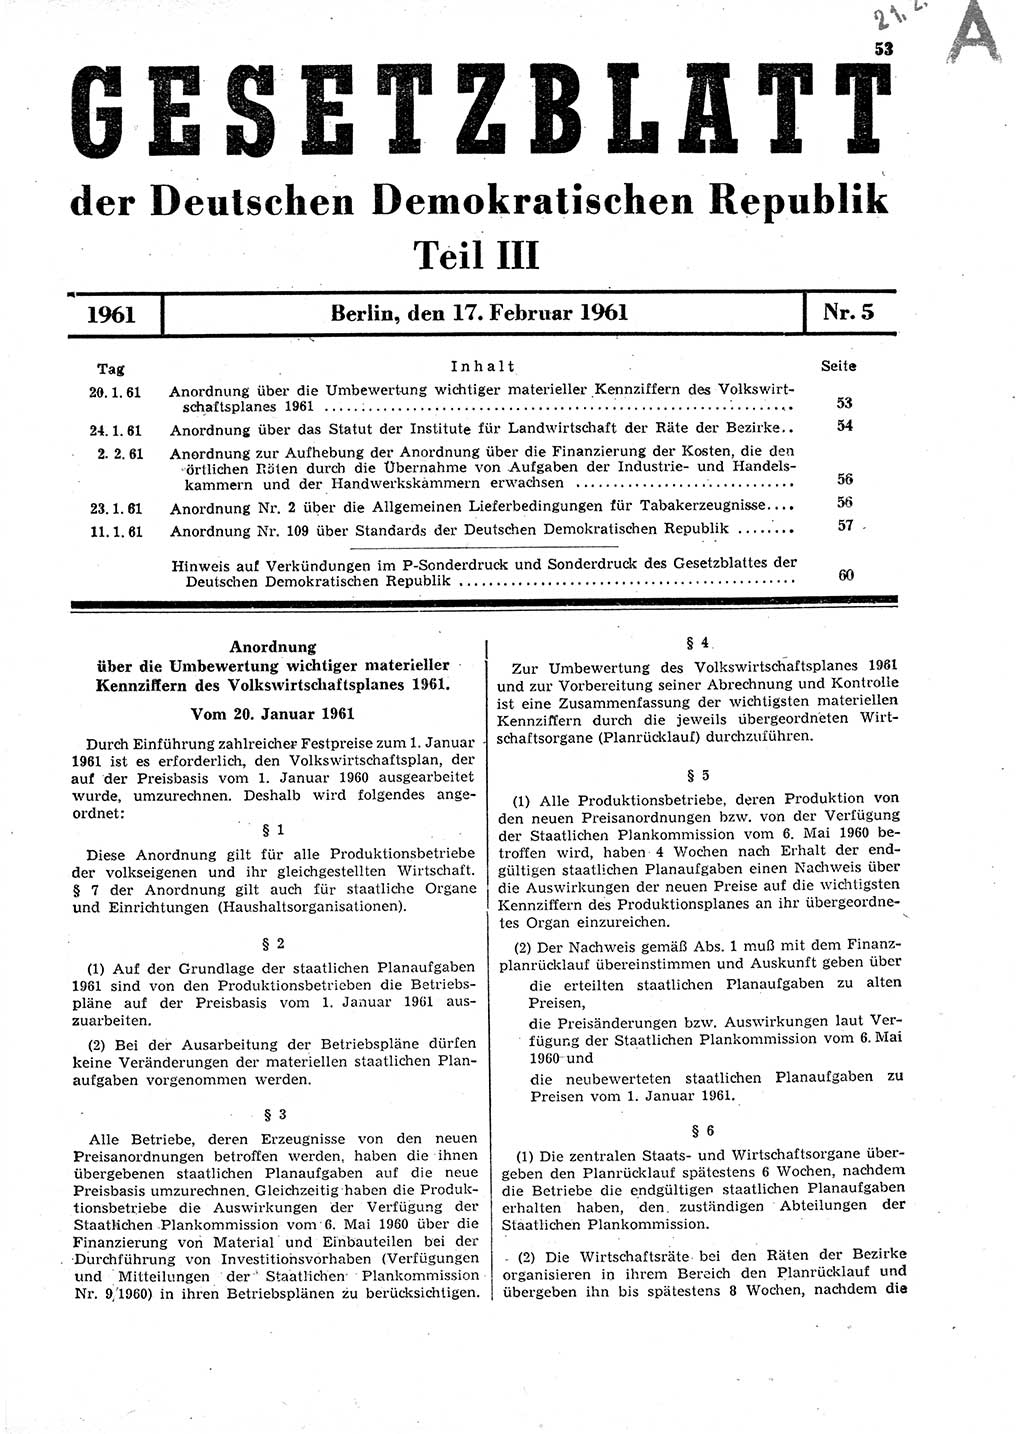 Gesetzblatt (GBl.) der Deutschen Demokratischen Republik (DDR) Teil ⅠⅠⅠ 1961, Seite 53 (GBl. DDR ⅠⅠⅠ 1961, S. 53)